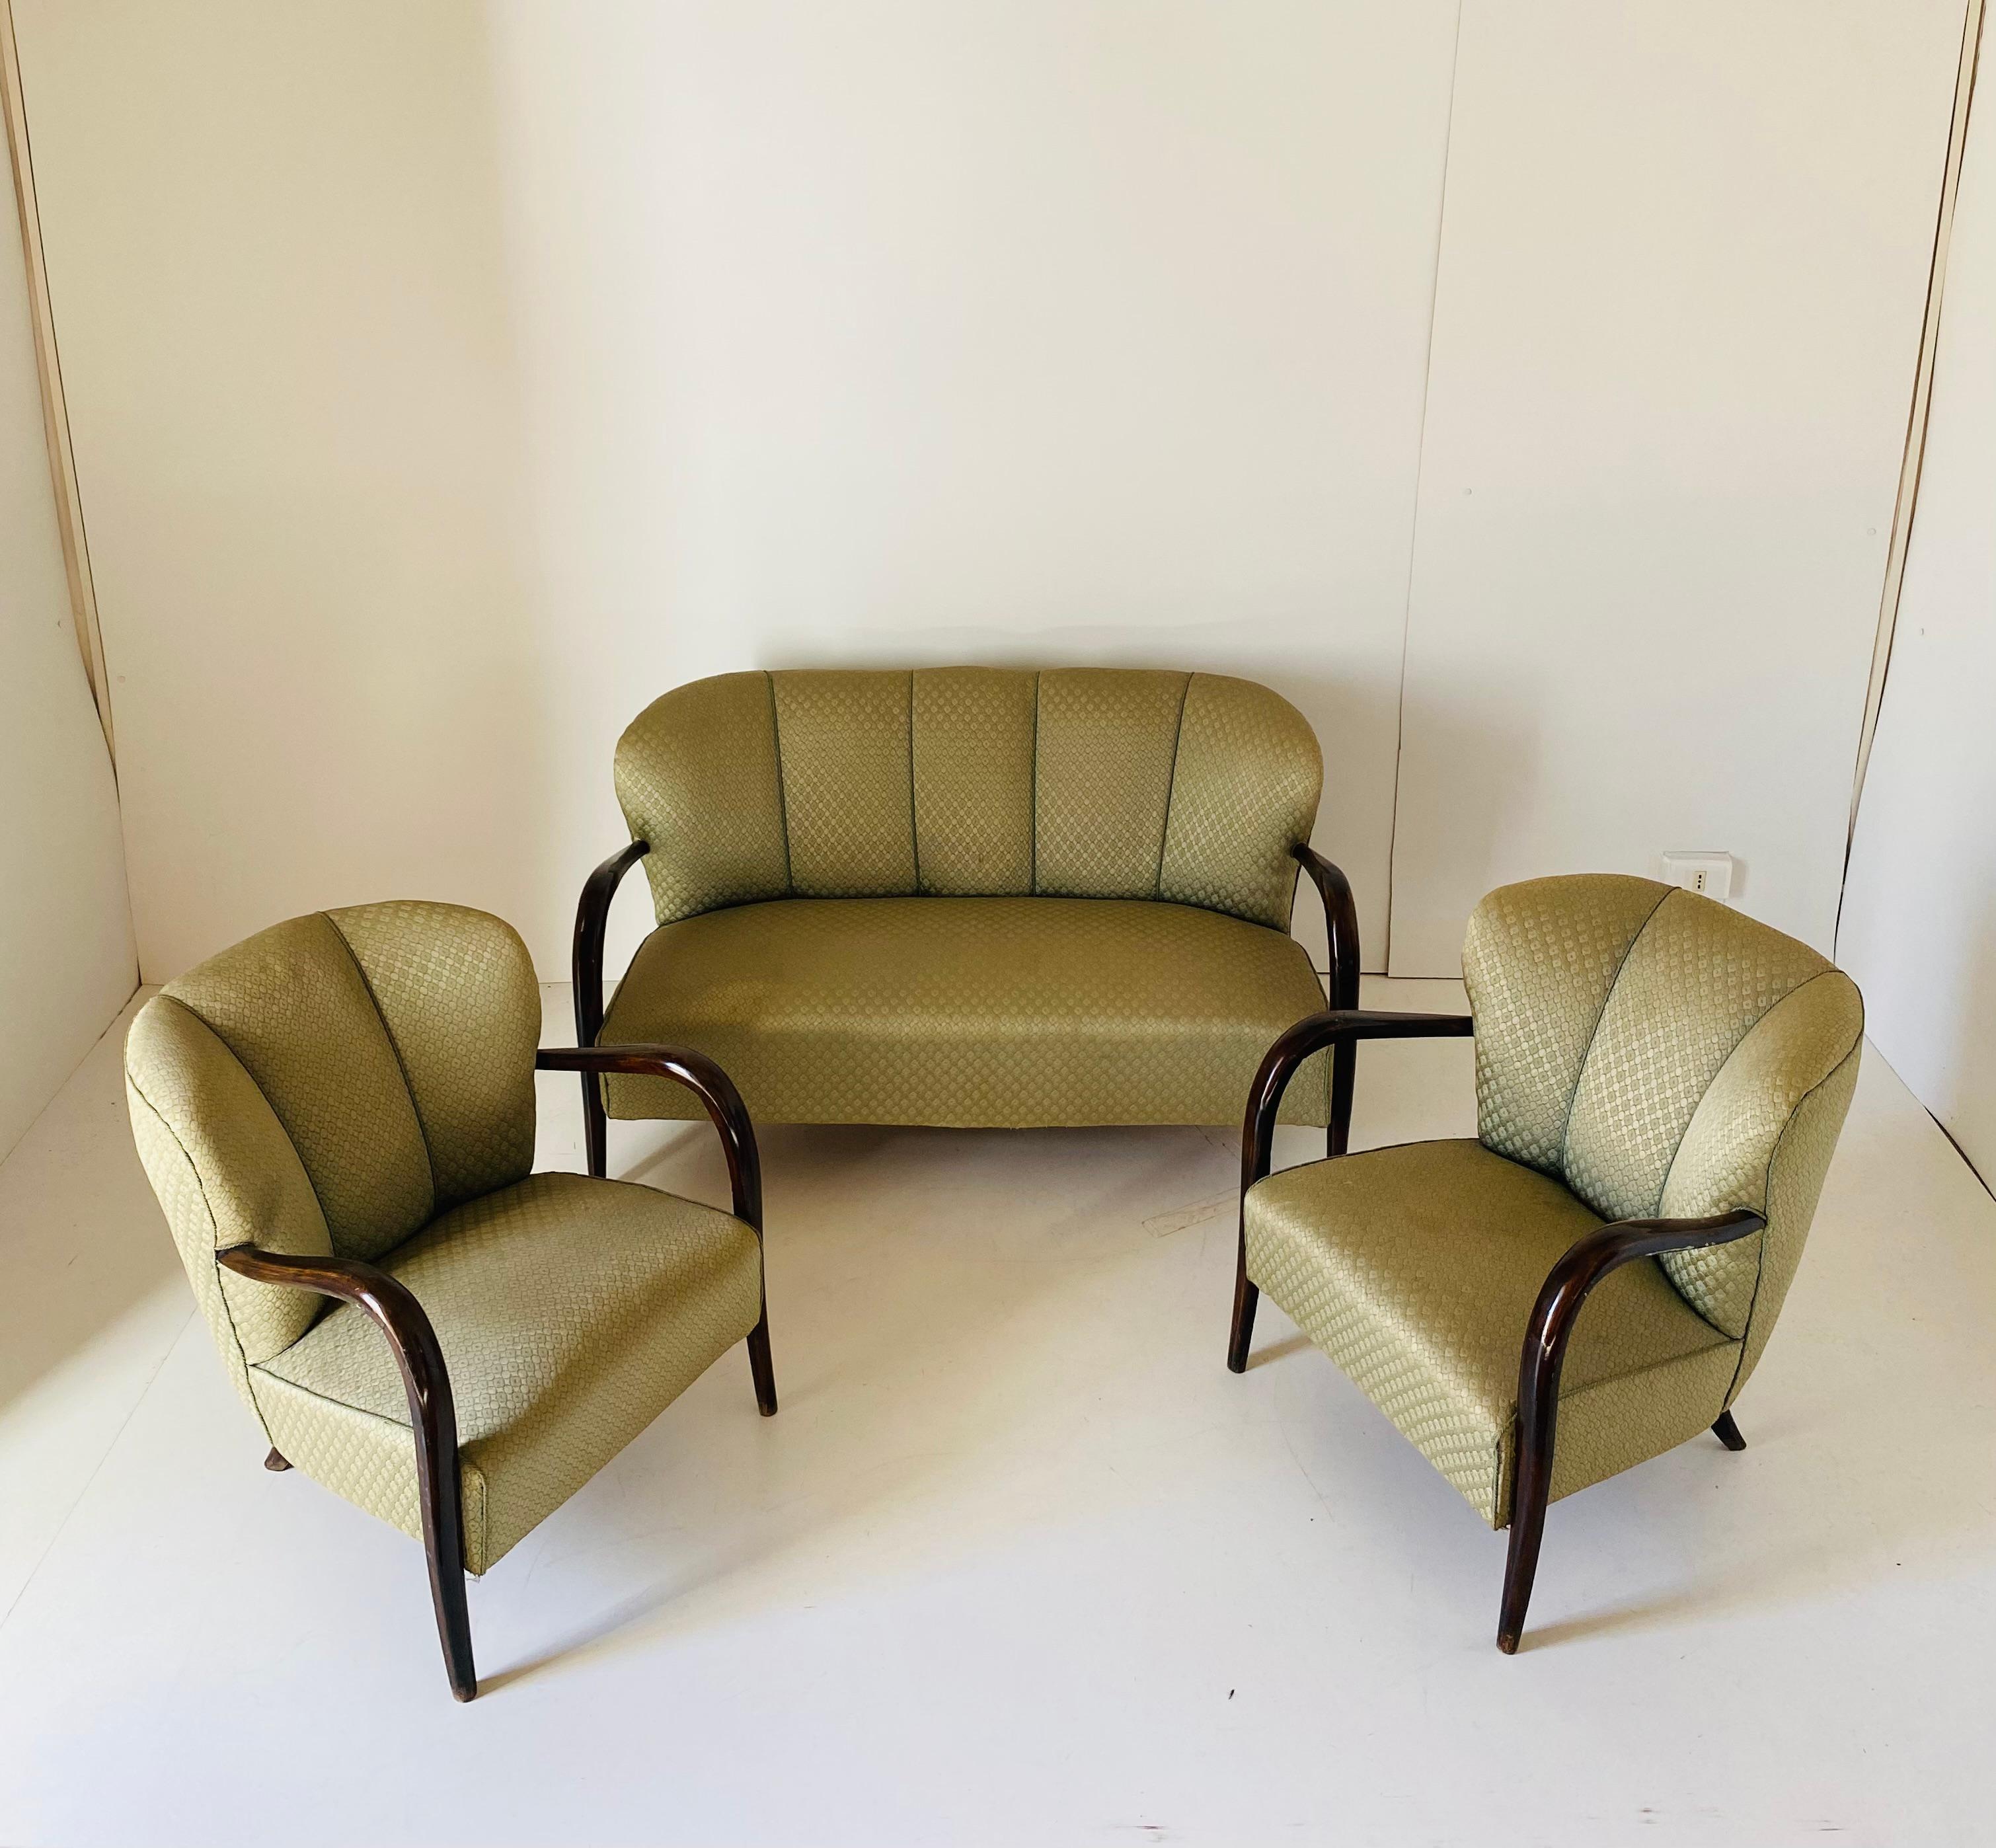 Ein seltenes Art-Déco-Wohnzimmer-Set aus den 1940er Jahren. Die in Frankreich gefertigte Garnitur besteht aus zwei Sesseln und einem Zweisitzer-Sofa. Beide Sessel und das Sofa haben noch ihren Originalstoff, der sich seinem Alter entsprechend in